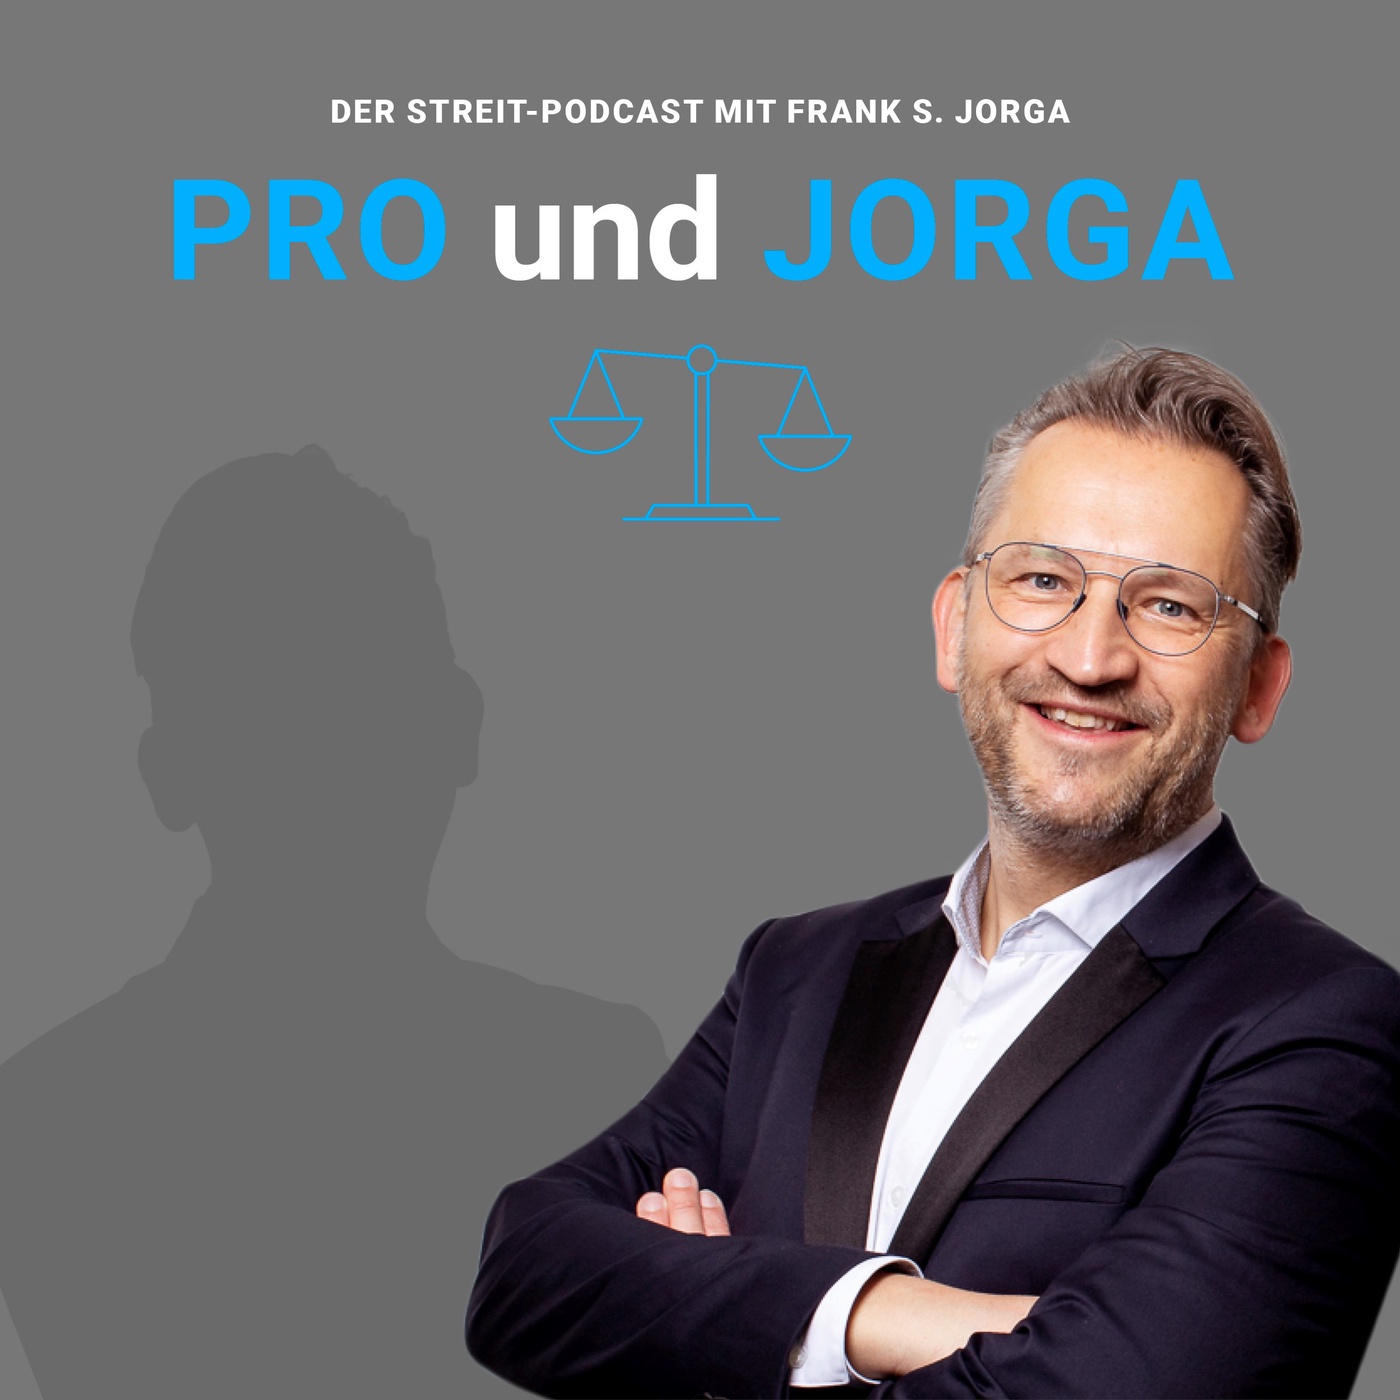 Pro und Jorga